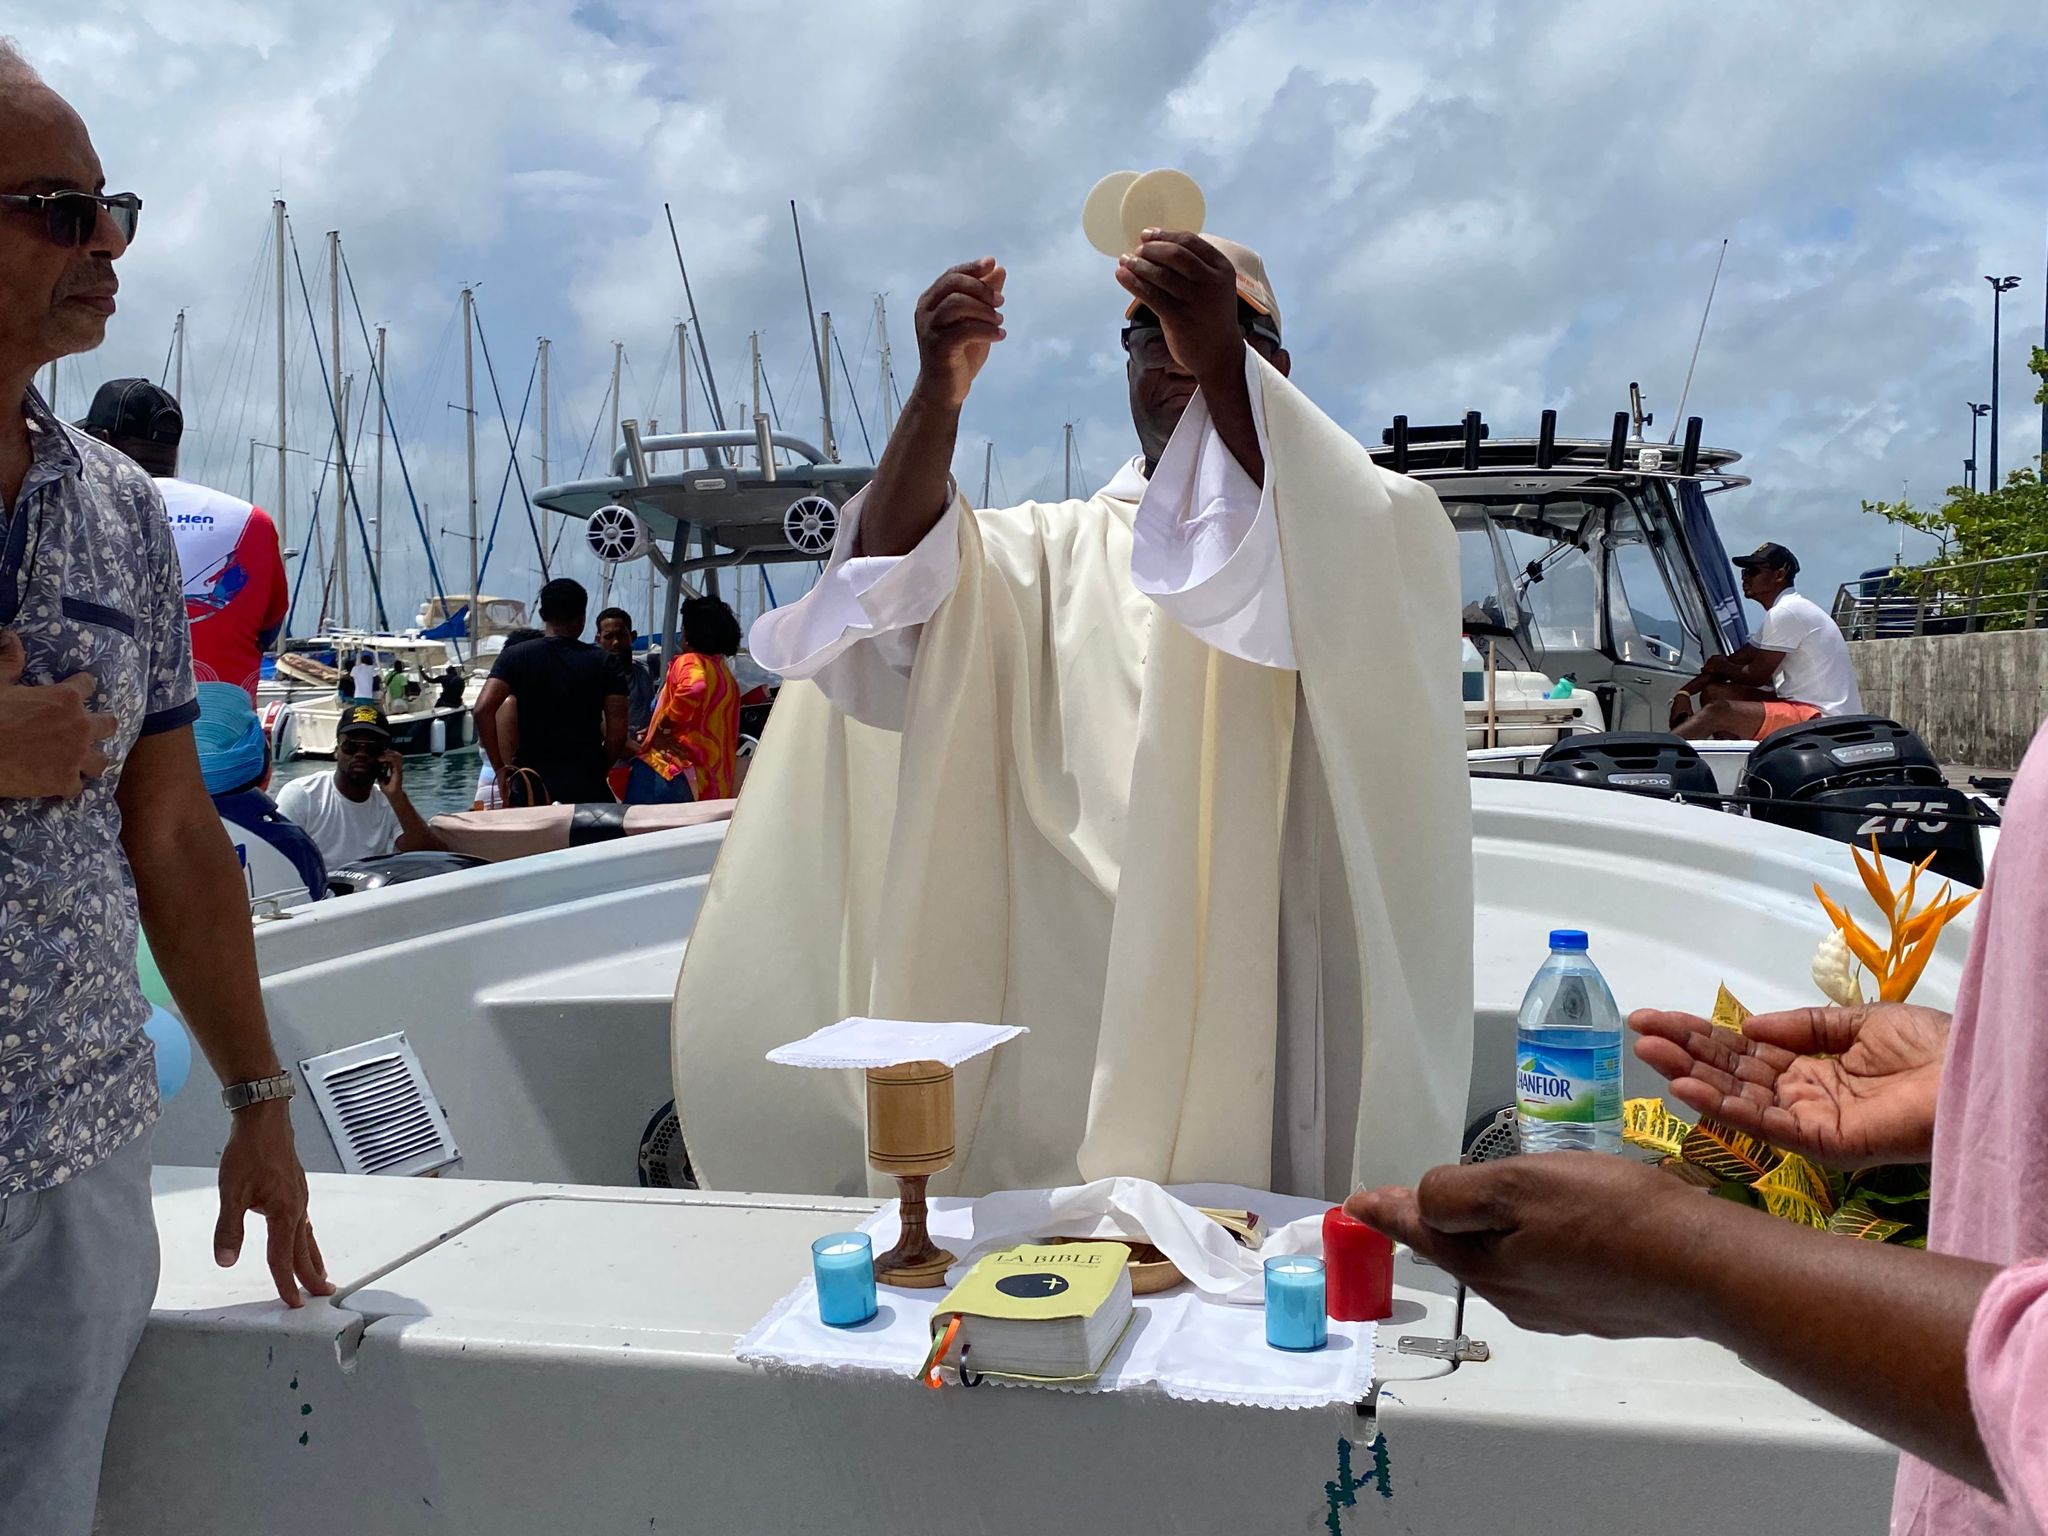     Un "bateau catholique" suit les étapes du Tour des yoles

